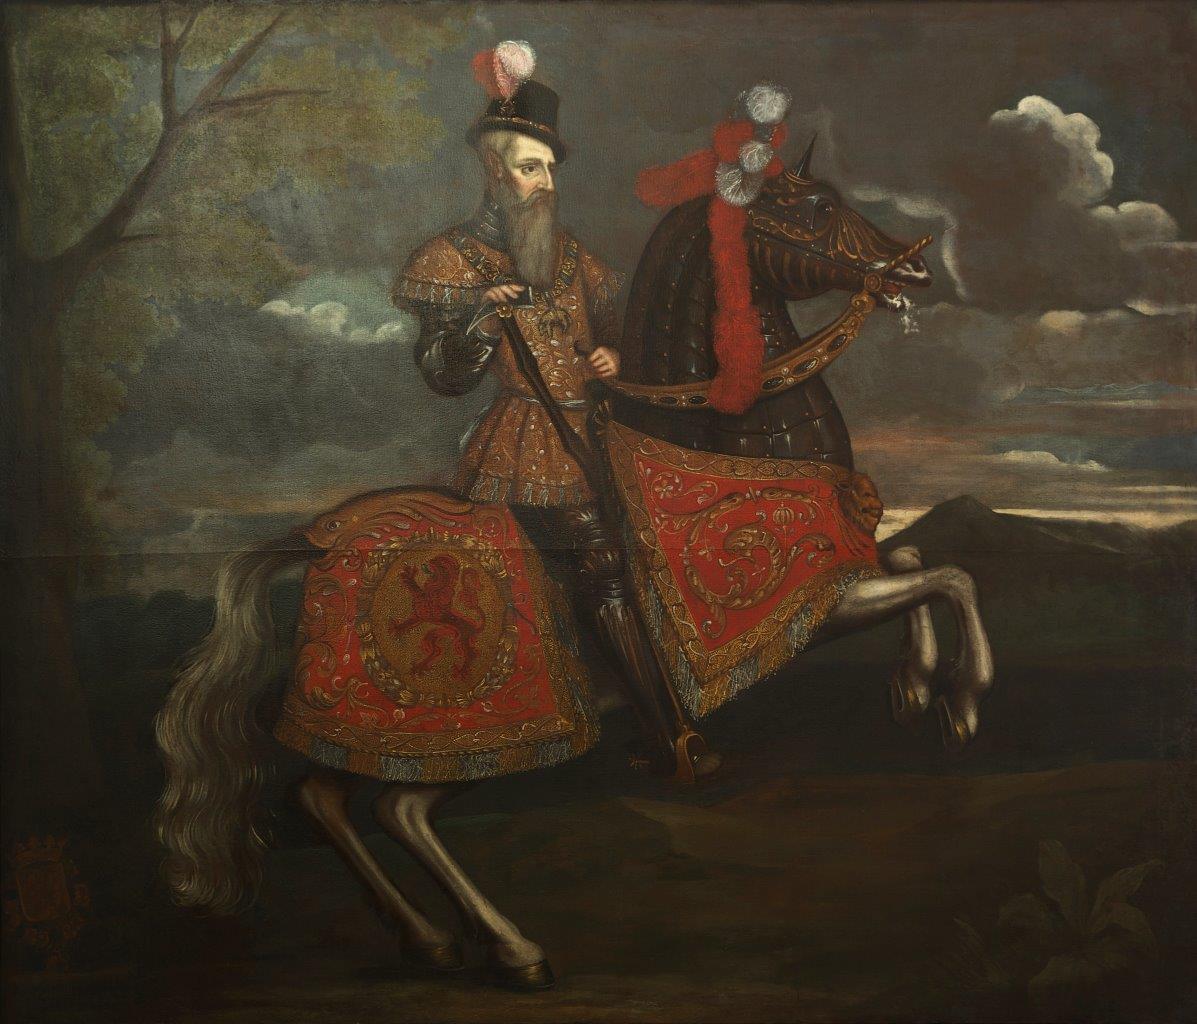 15. Reinoud III van Brederode - schilderij in het raadhuis van Vianen